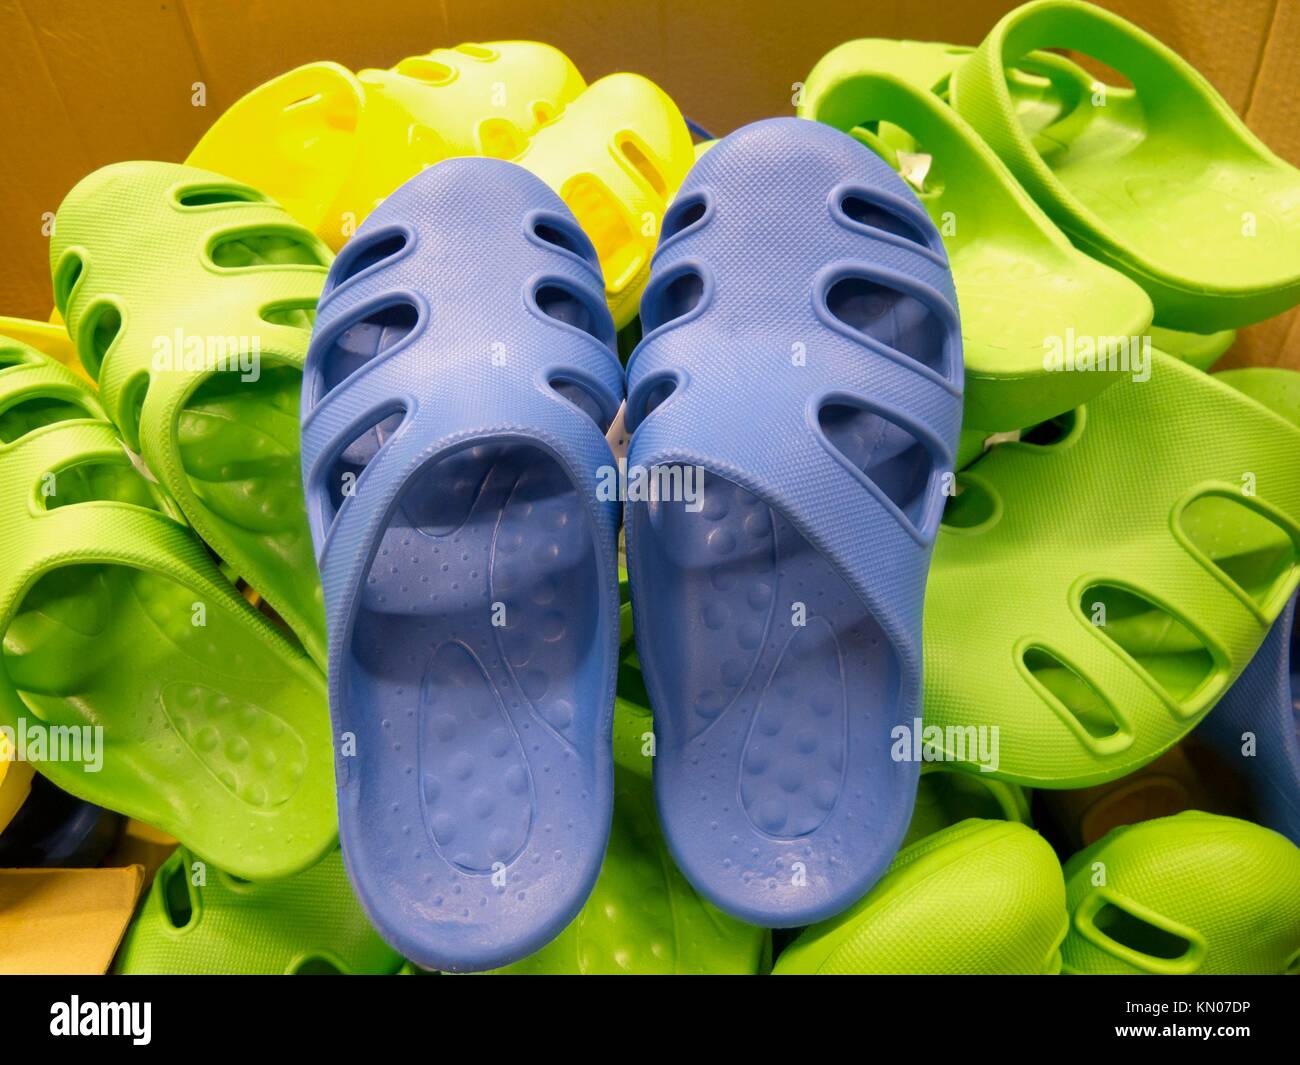 Barata sandalias de goma imitando el estilo de Crocs en venta Fotografía de  stock - Alamy